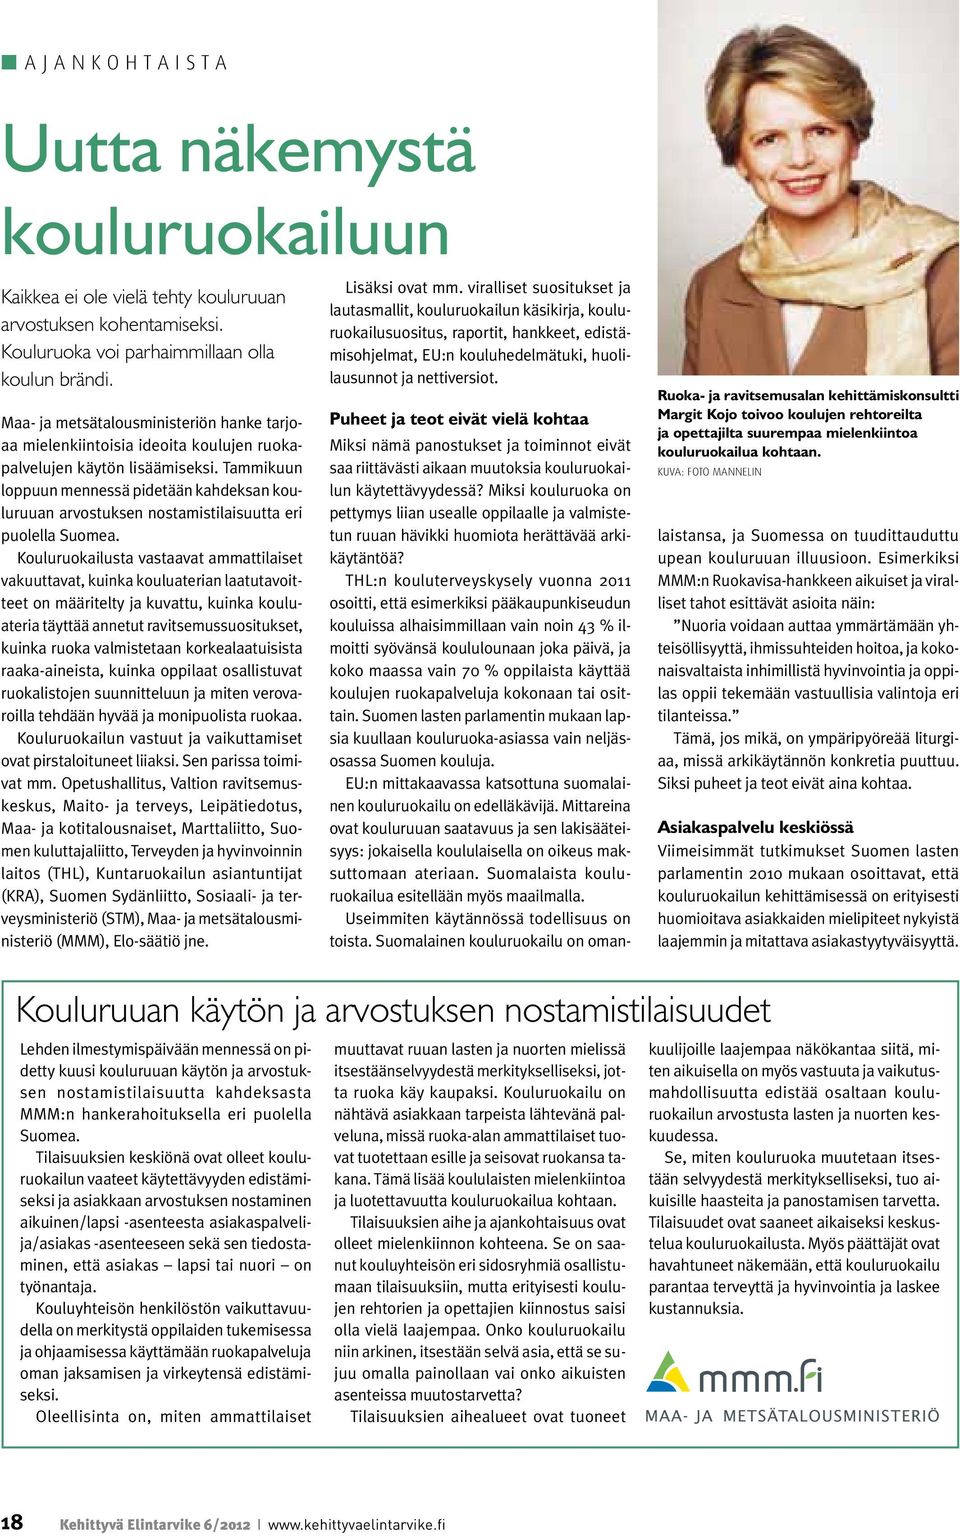 Tammikuun loppuun mennessä pidetään kahdeksan kouluruuan arvostuksen nostamistilaisuutta eri puolella Suomea.